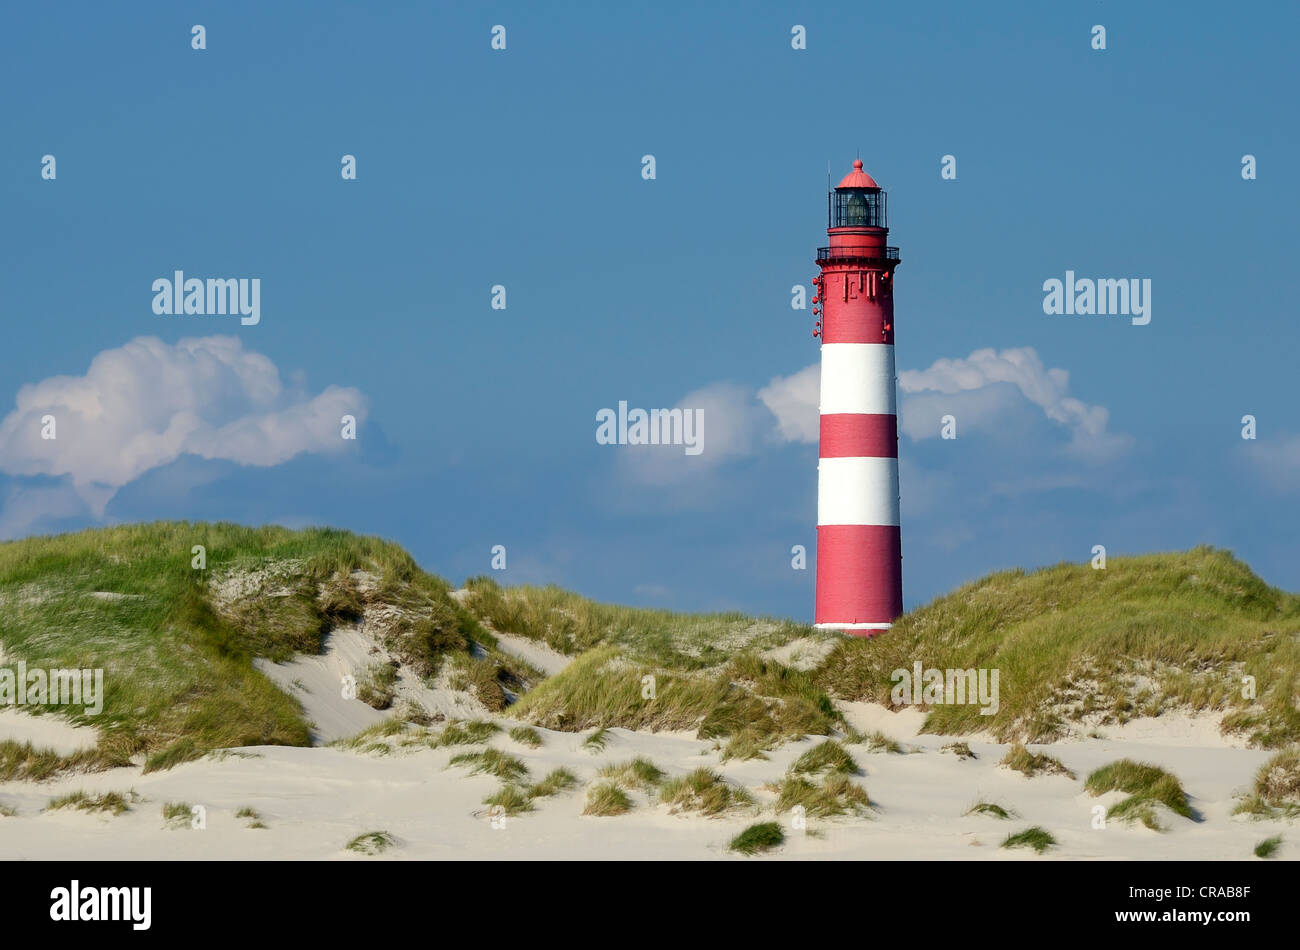 Amrum lighthouse on the dunes, Amrum Island, Nordfriesland, North Frisia, Schleswig-Holstein, Germany, Europe Stock Photo